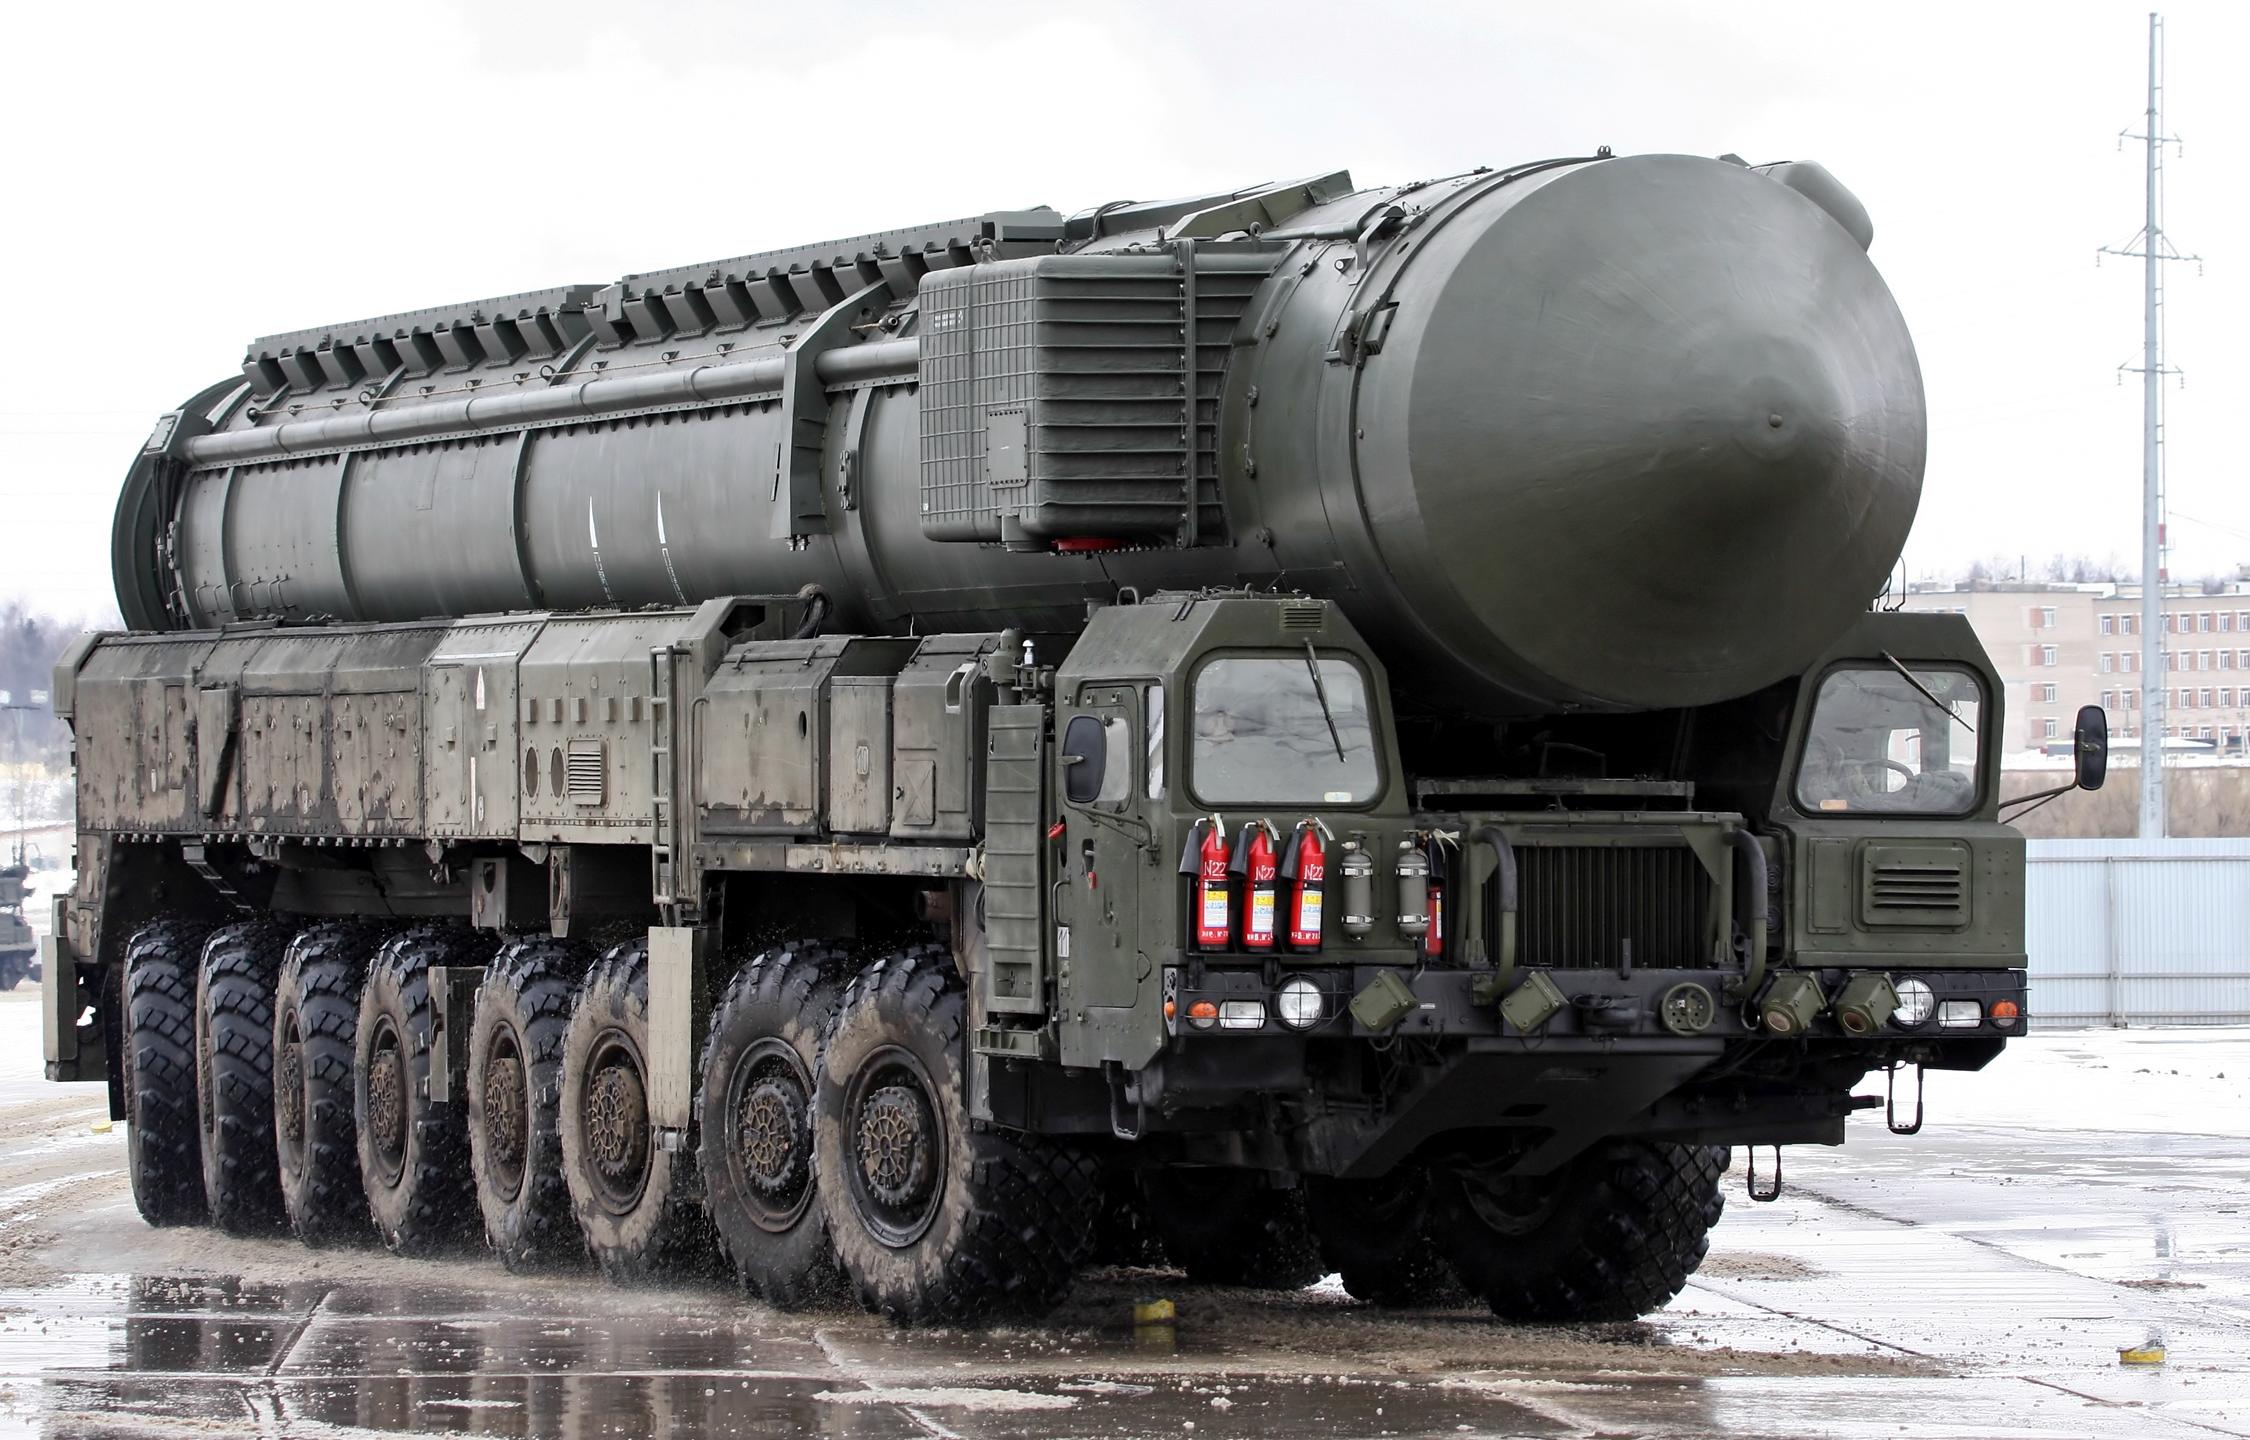 一发入魂俄罗斯萨尔马特洲际导弹即将开始测试西方夜不能寐了